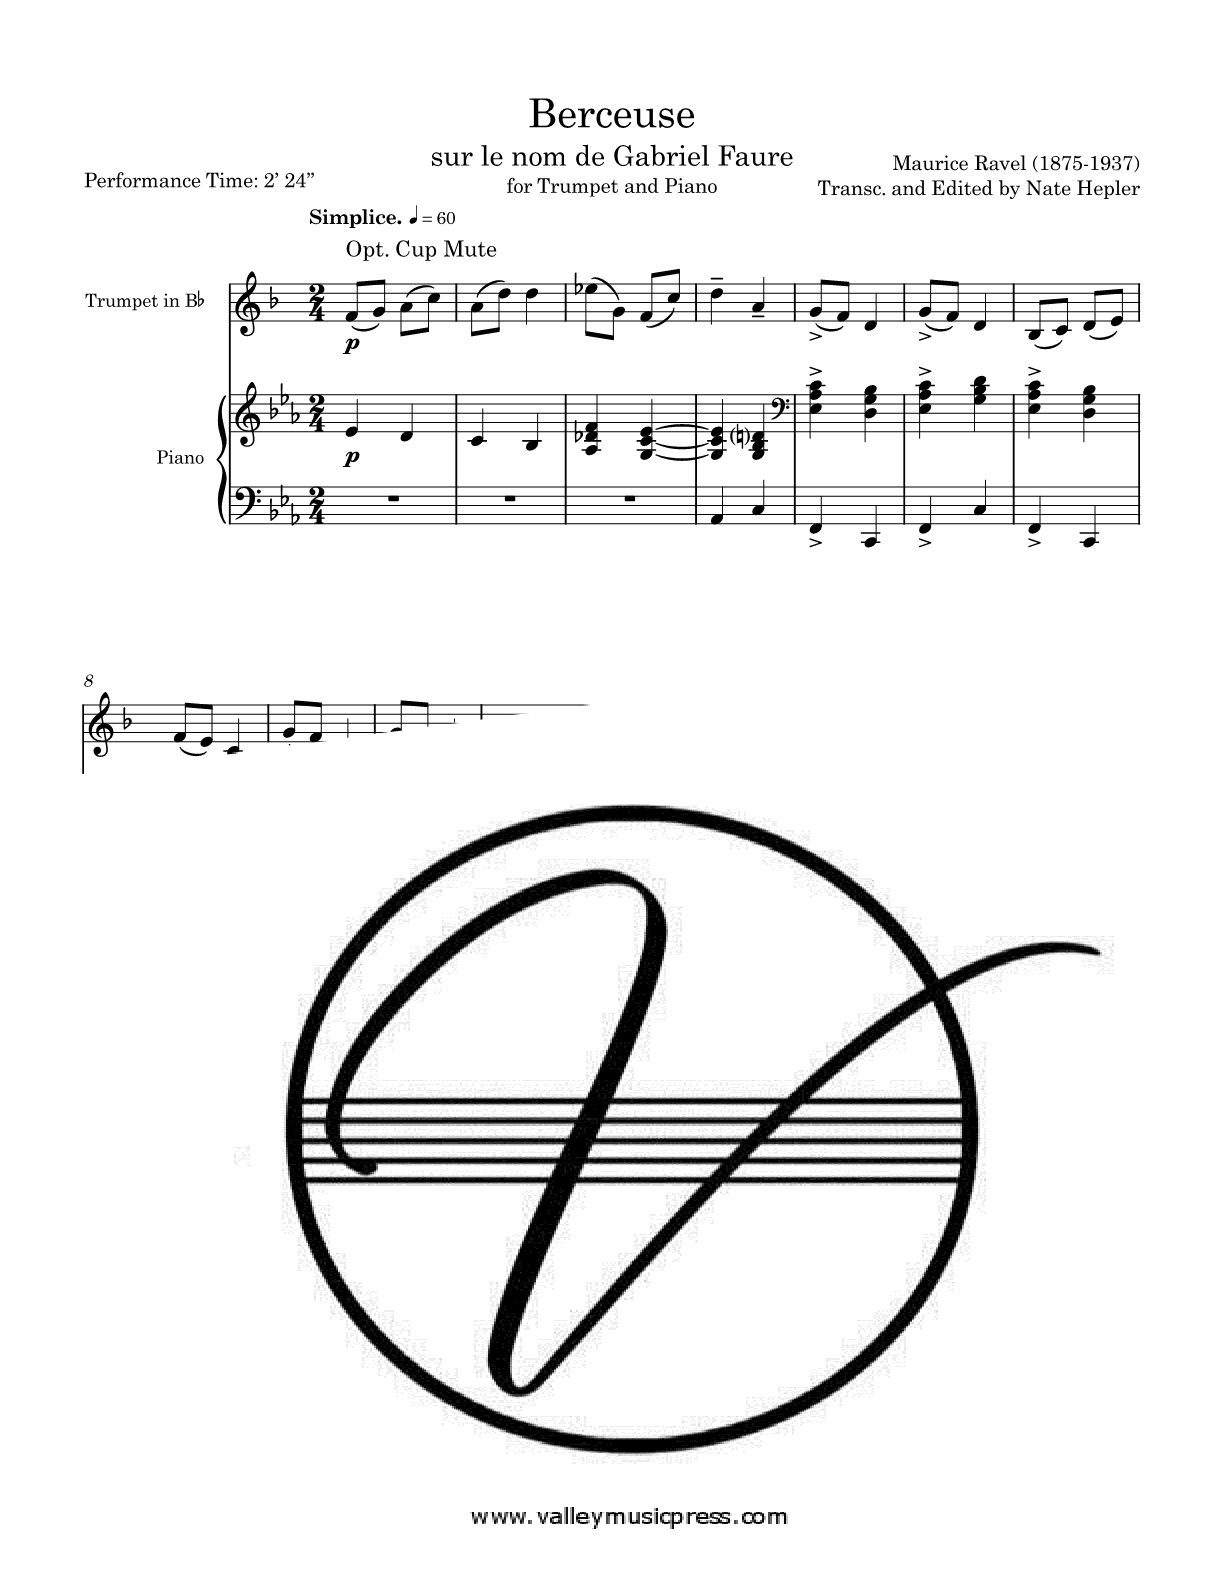 Ravel - Berceuse sur le nom de Gabriel Faure (Trumpet & Piano)